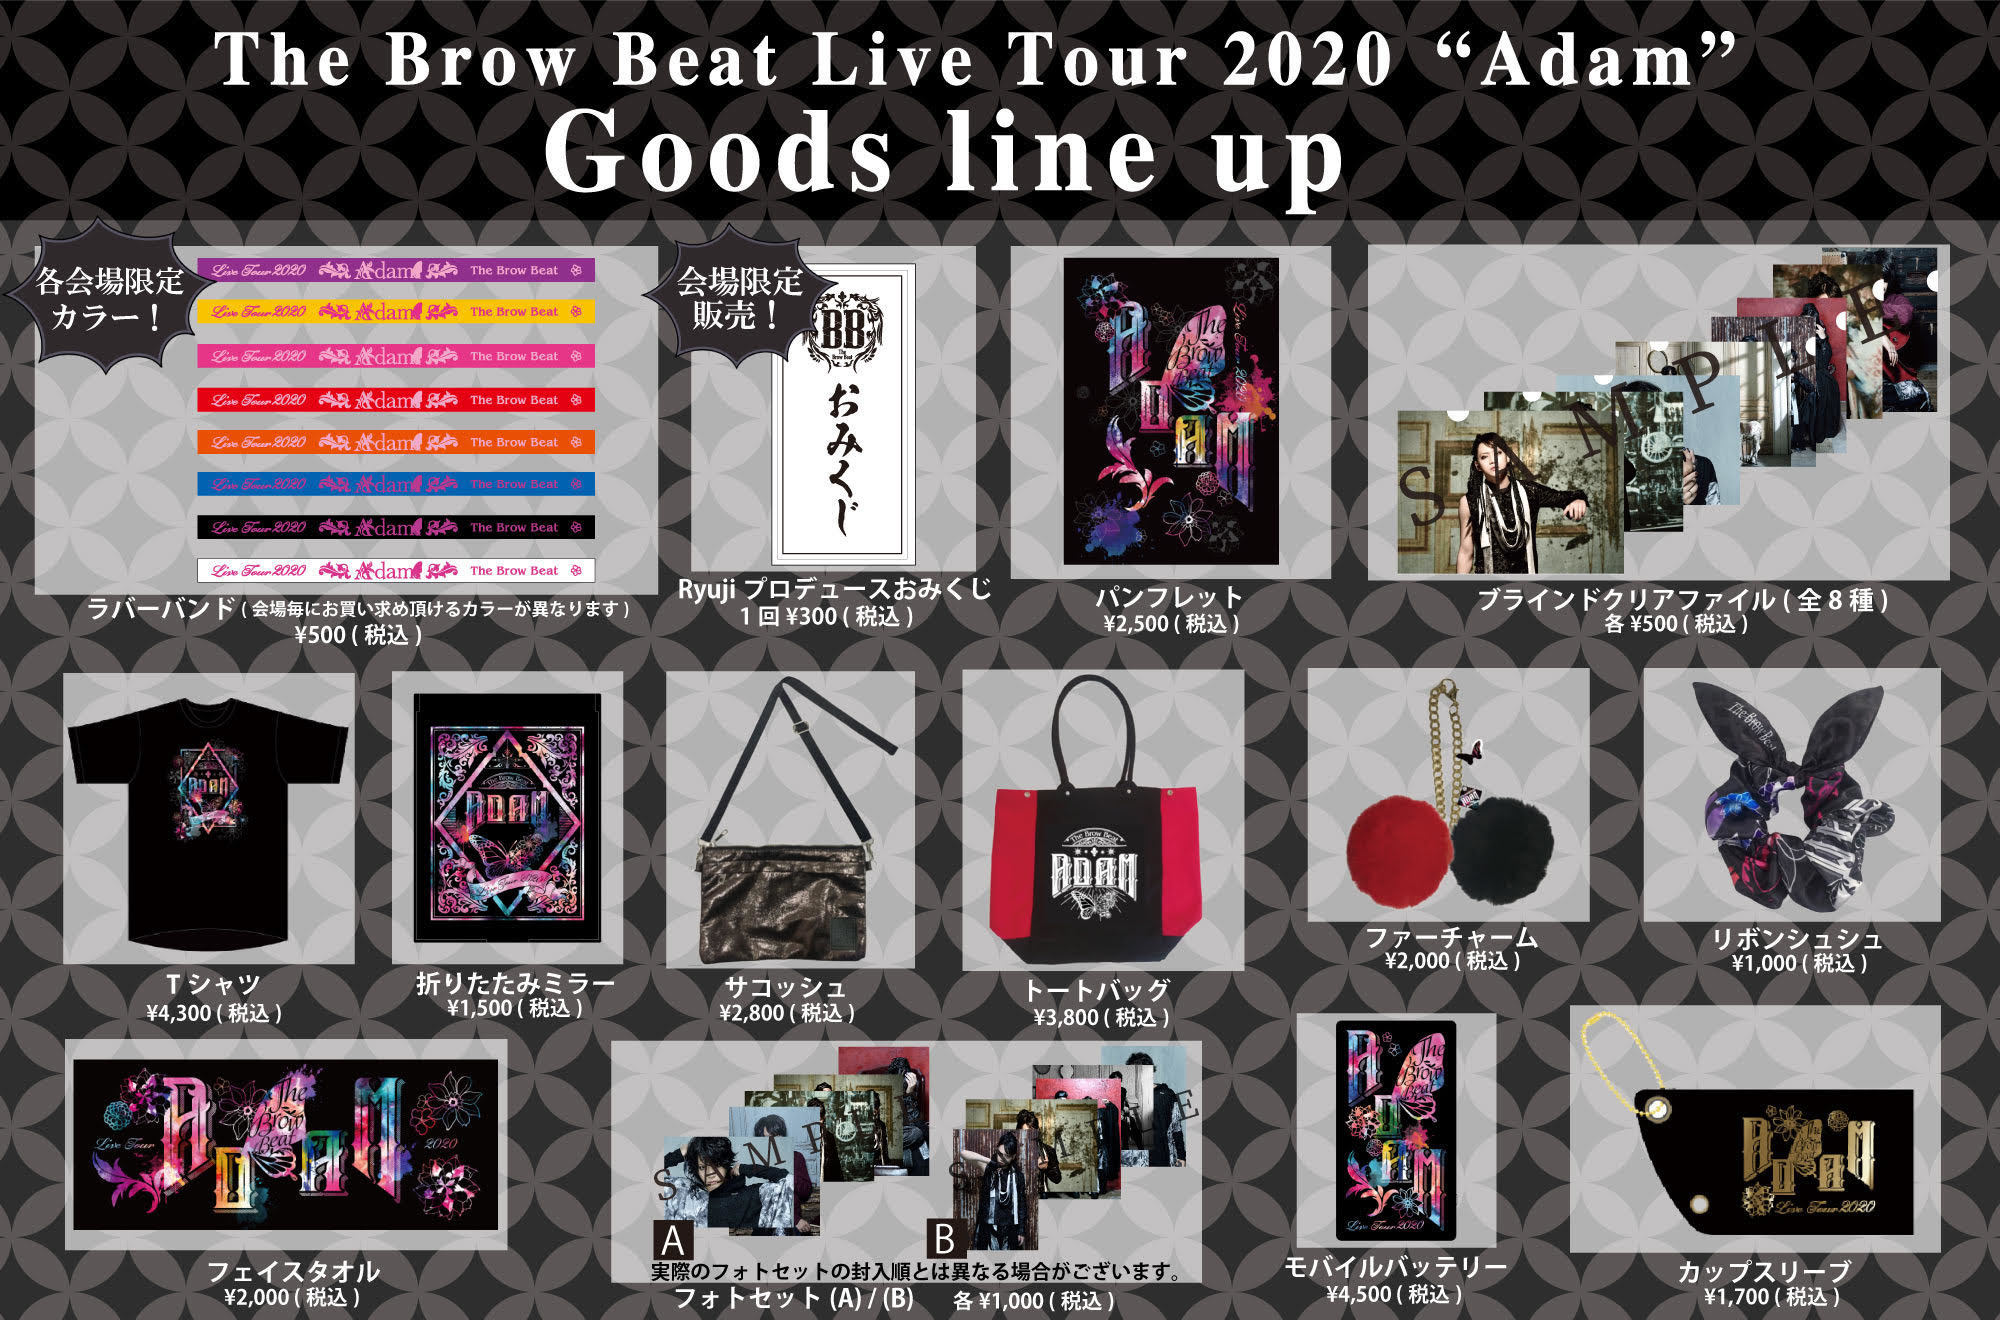 佐藤流司】The Brow Beat Live Tour 2020 “Adam”ツアーグッズの販売が 